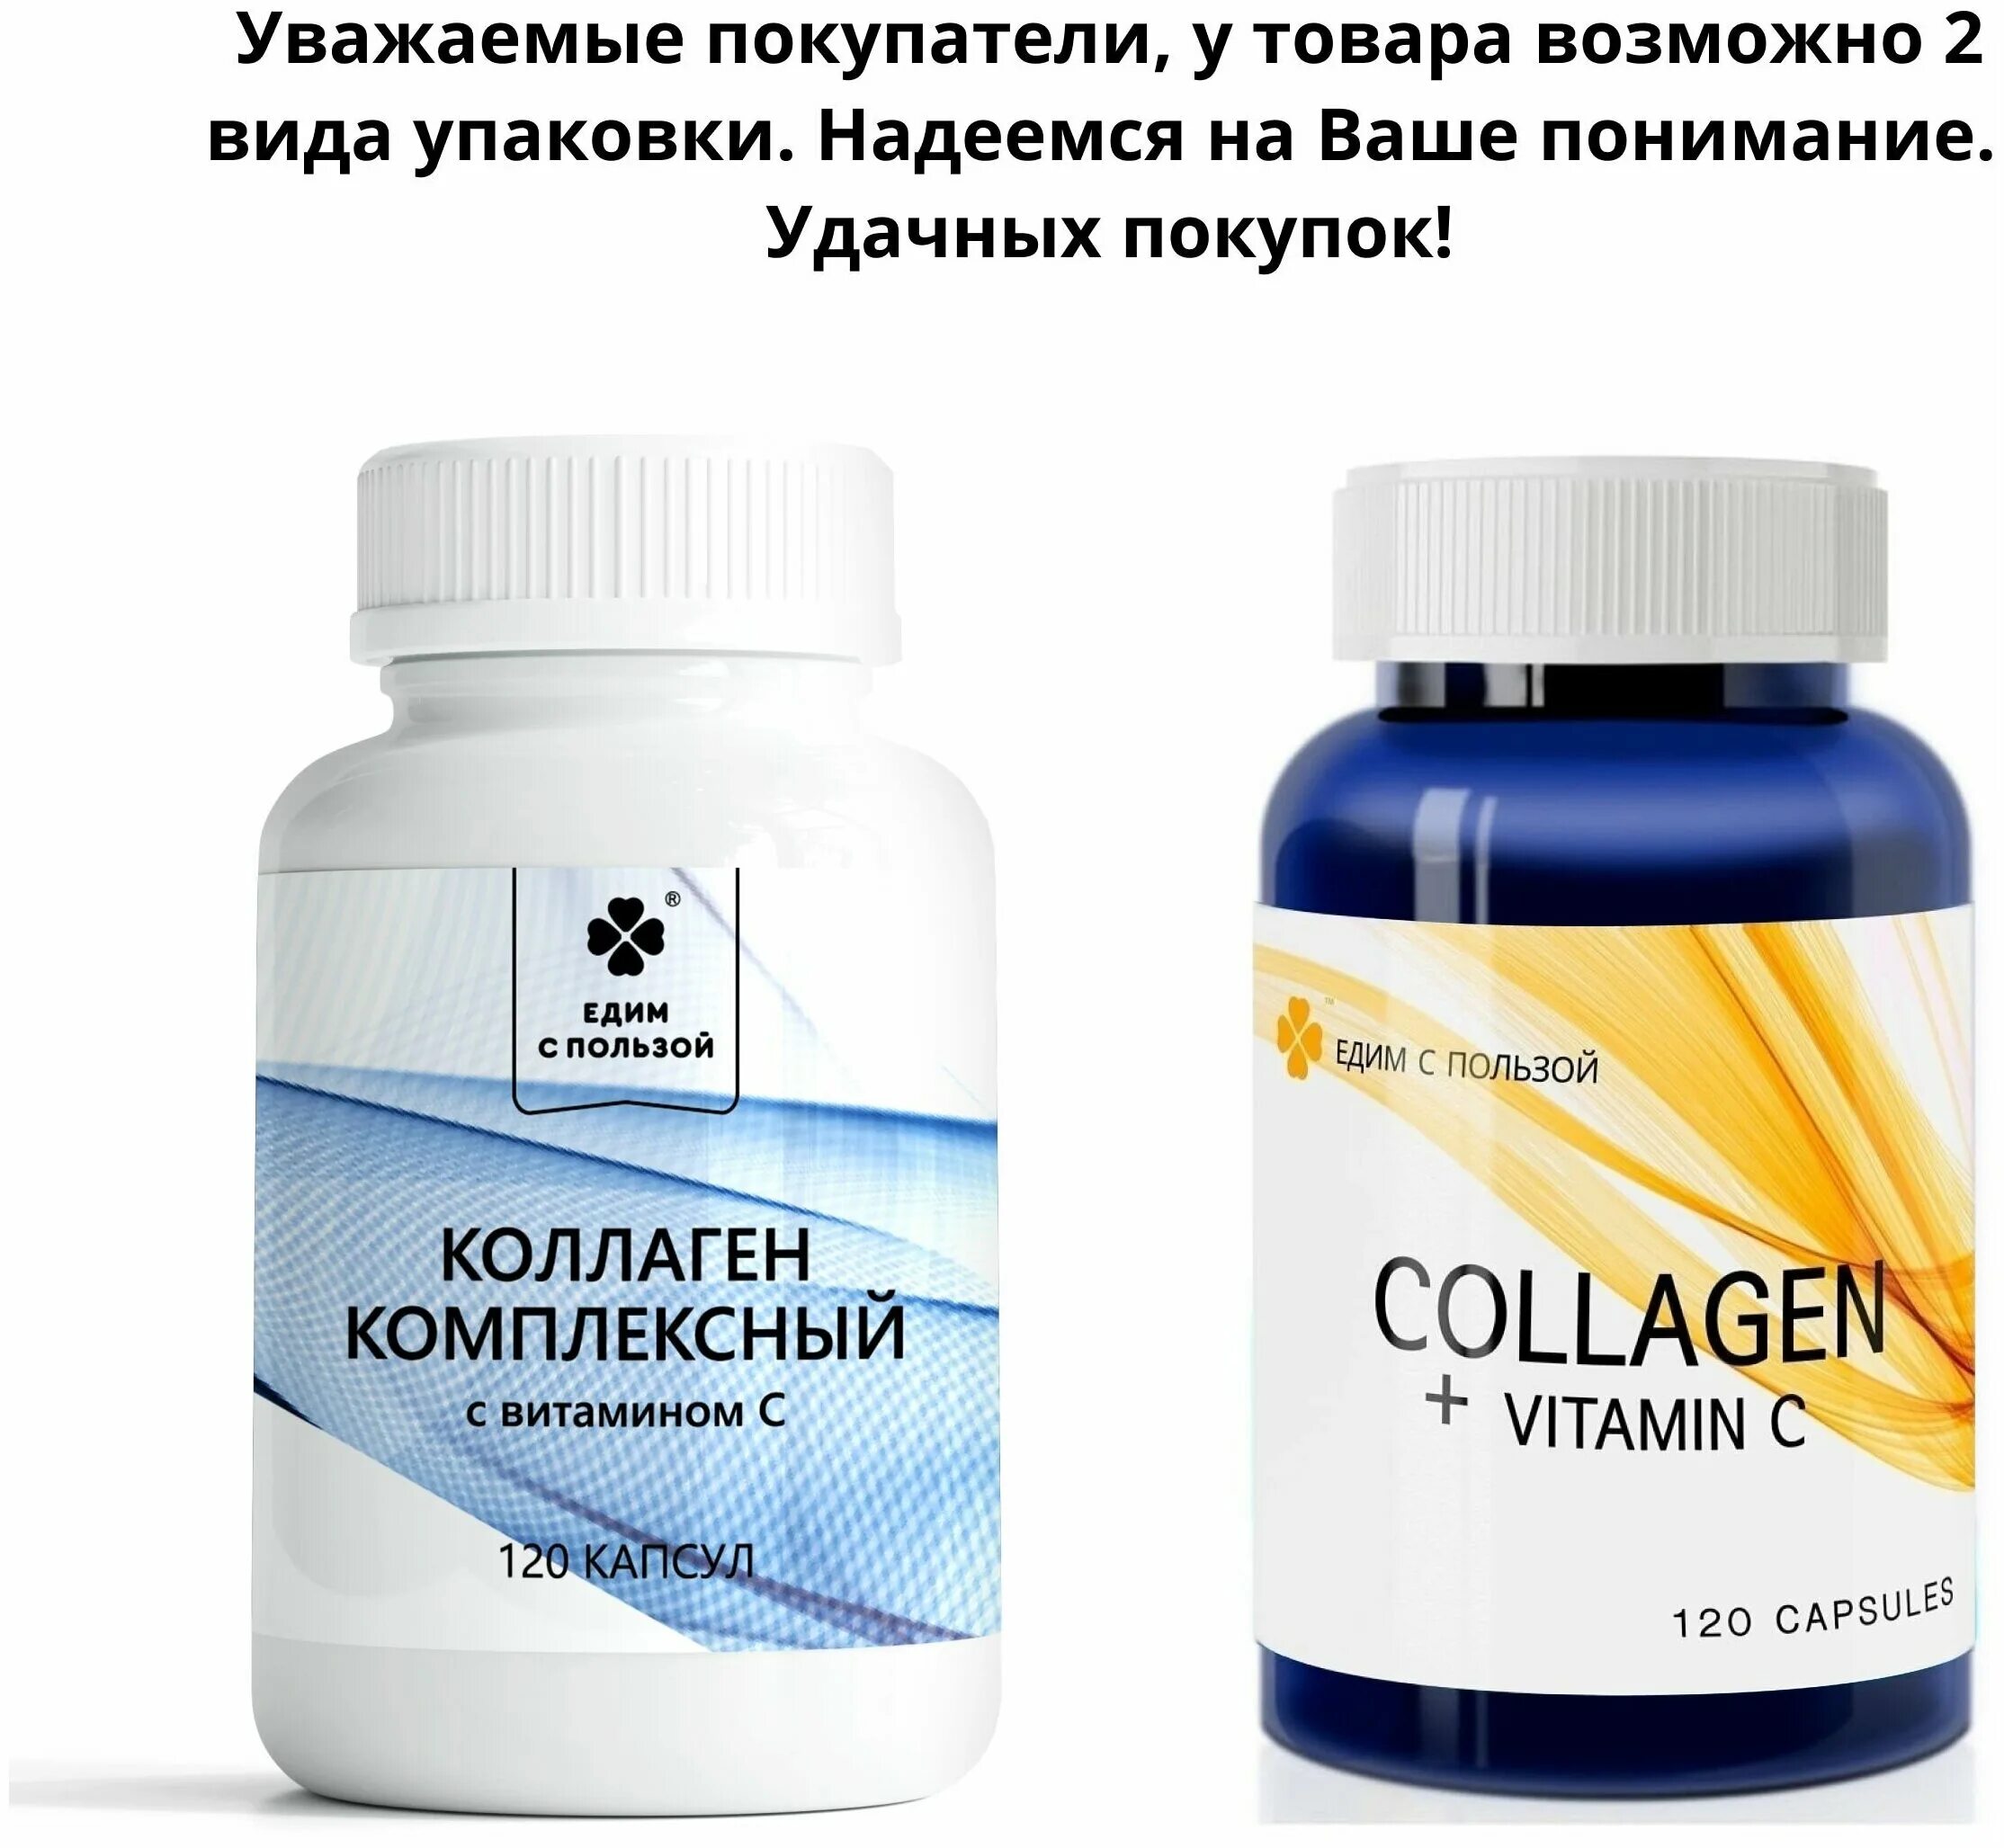 Collagen vitamin c отзывы. Коллаген для волос витамины. Коллаген с витамином с. Коллаген в капсулах для суставов с витамином c. Коллаген с витамином с таблетки.